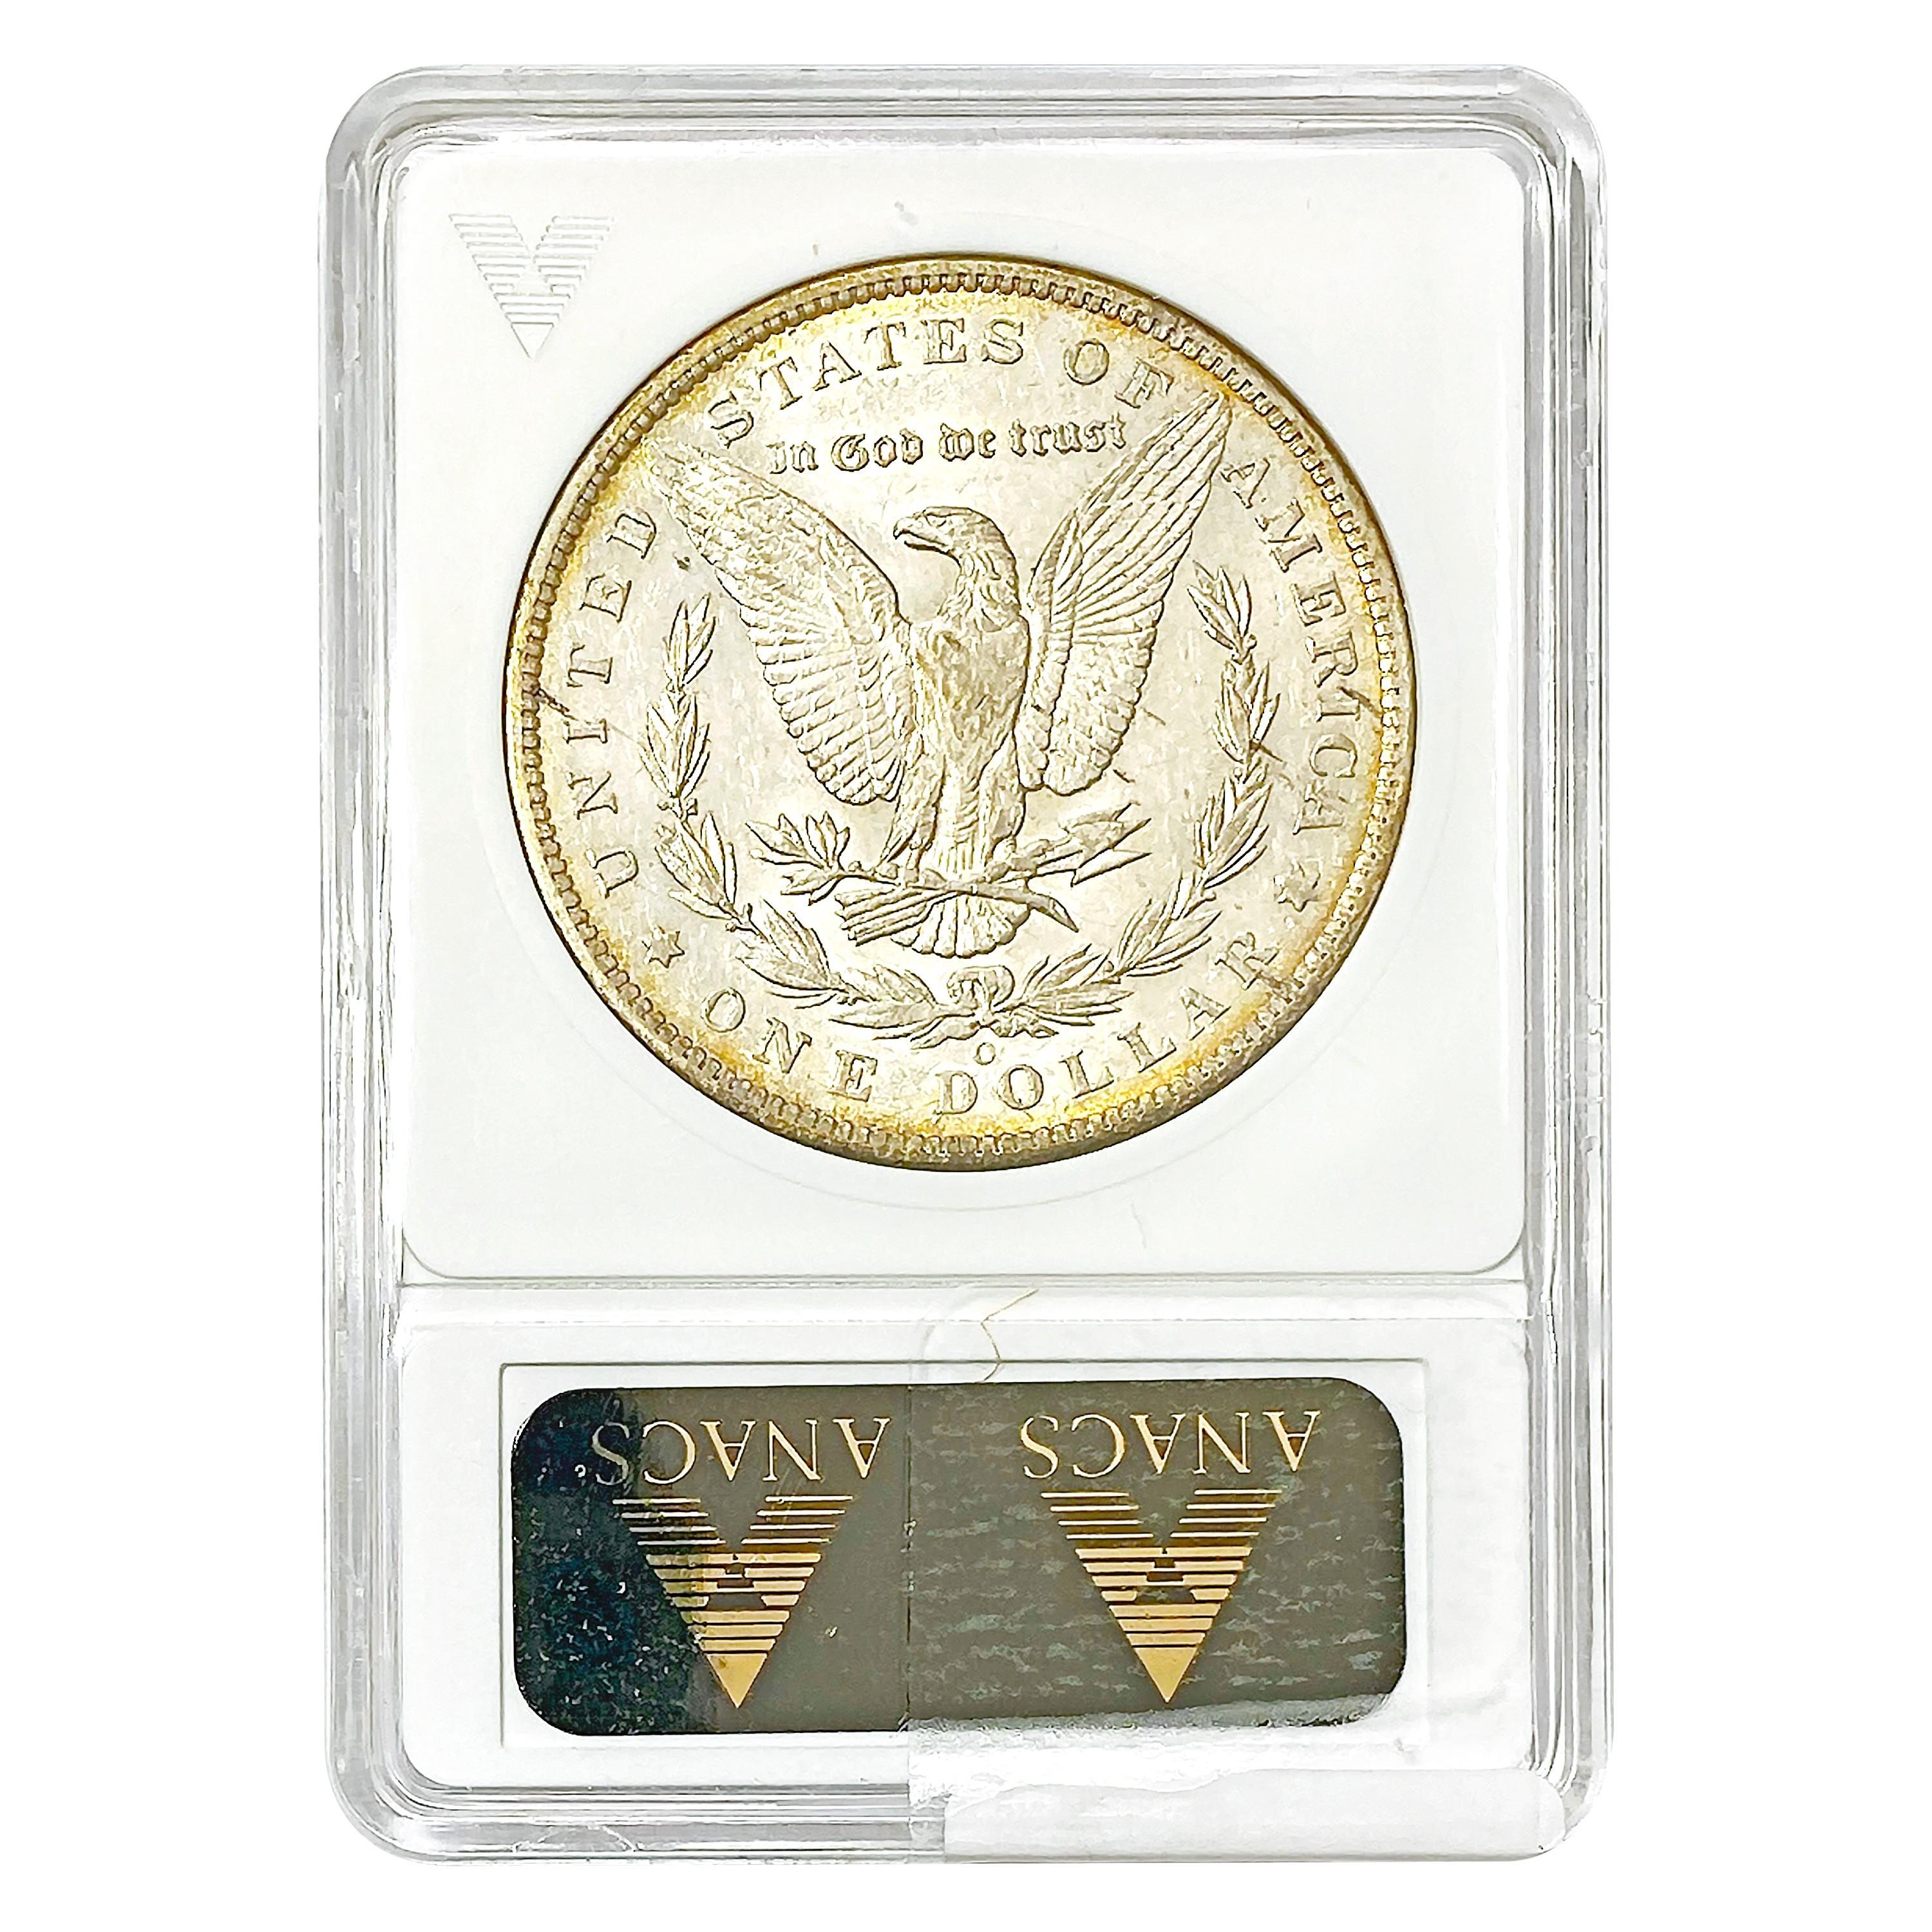 1886-O Morgan Silver Dollar ANACS AU53